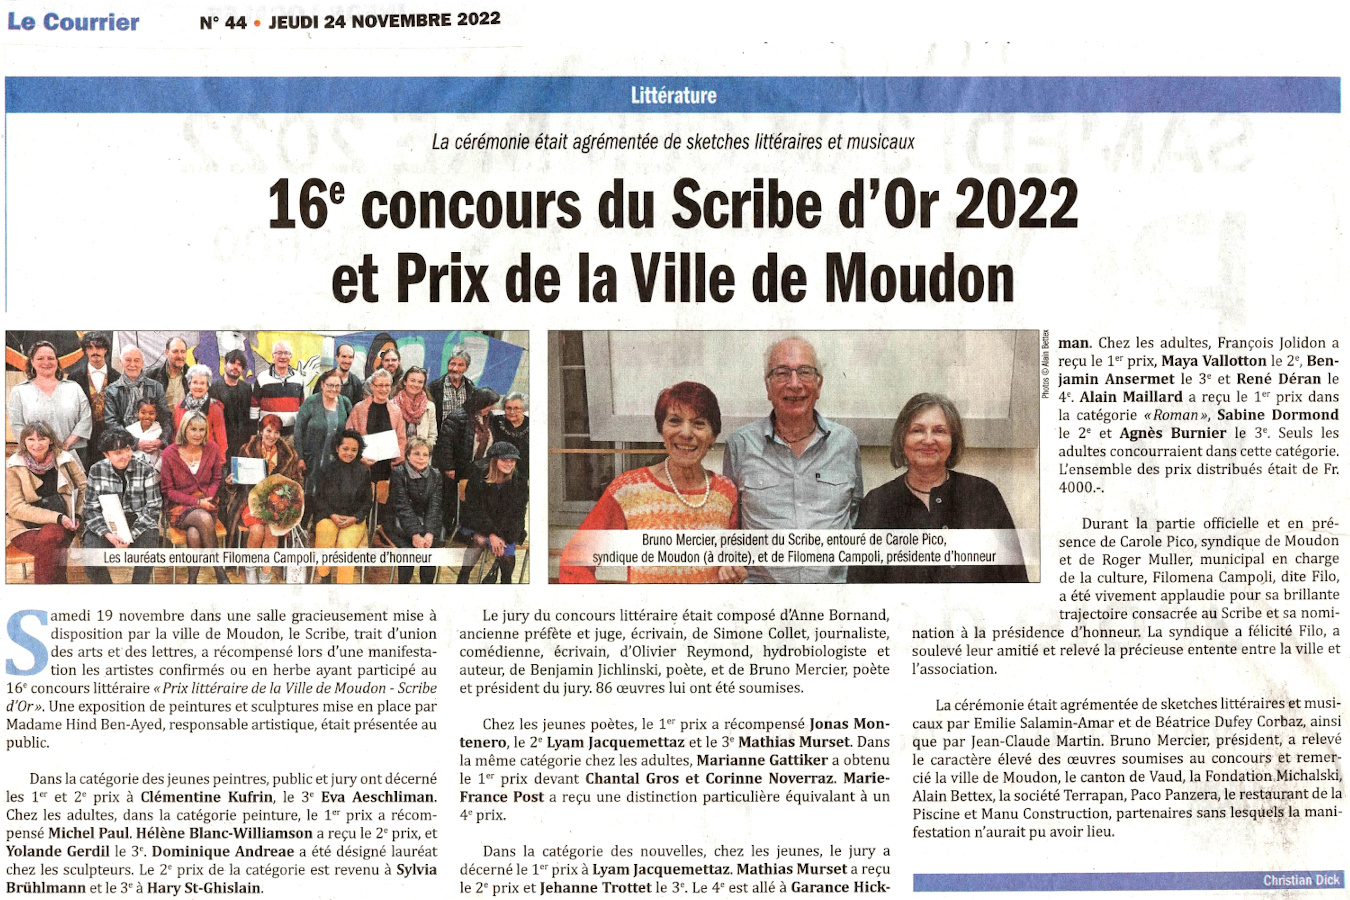 Concours littraire Moudon et Le Scribe d'or - Article paru le 24 novembre 2022 dans Le Courrier